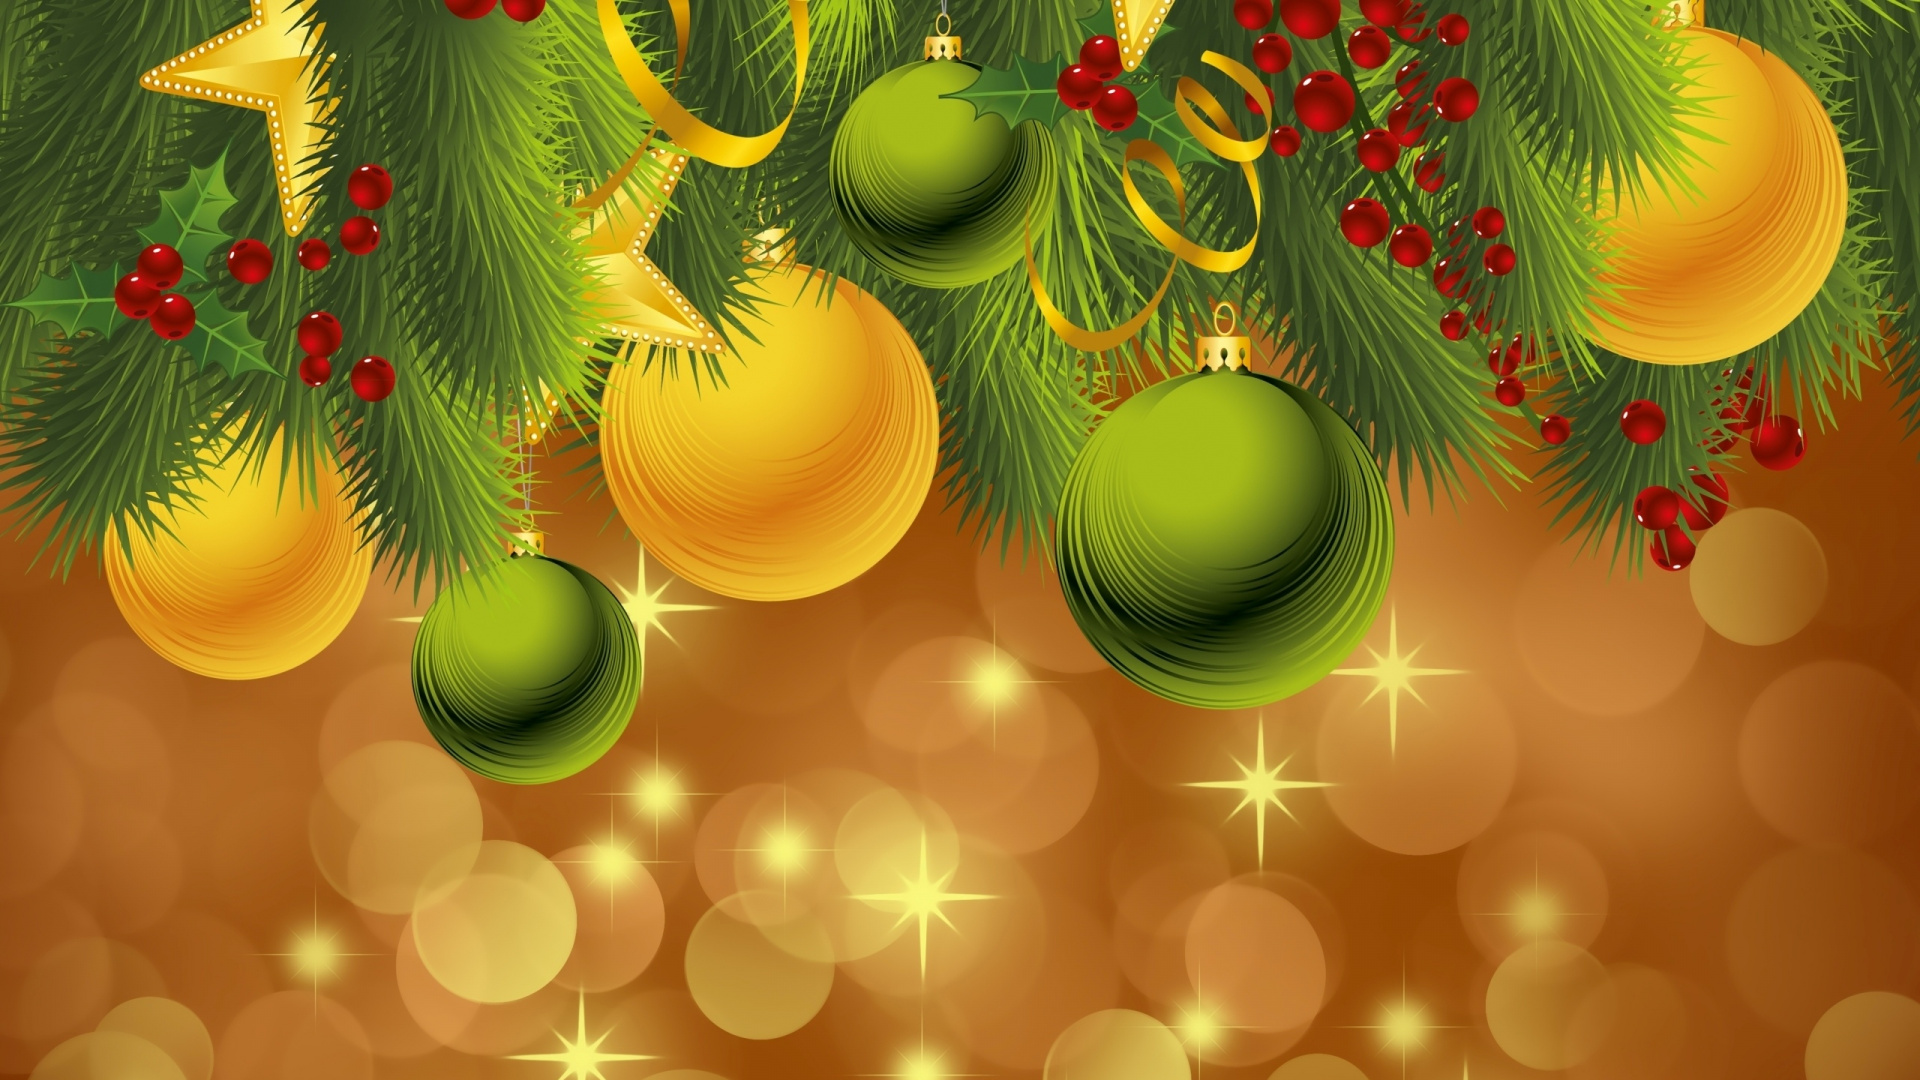 圣诞节那天, 新的一年, 圣诞节的装饰品, 假日, 绿色的 壁纸 1920x1080 允许